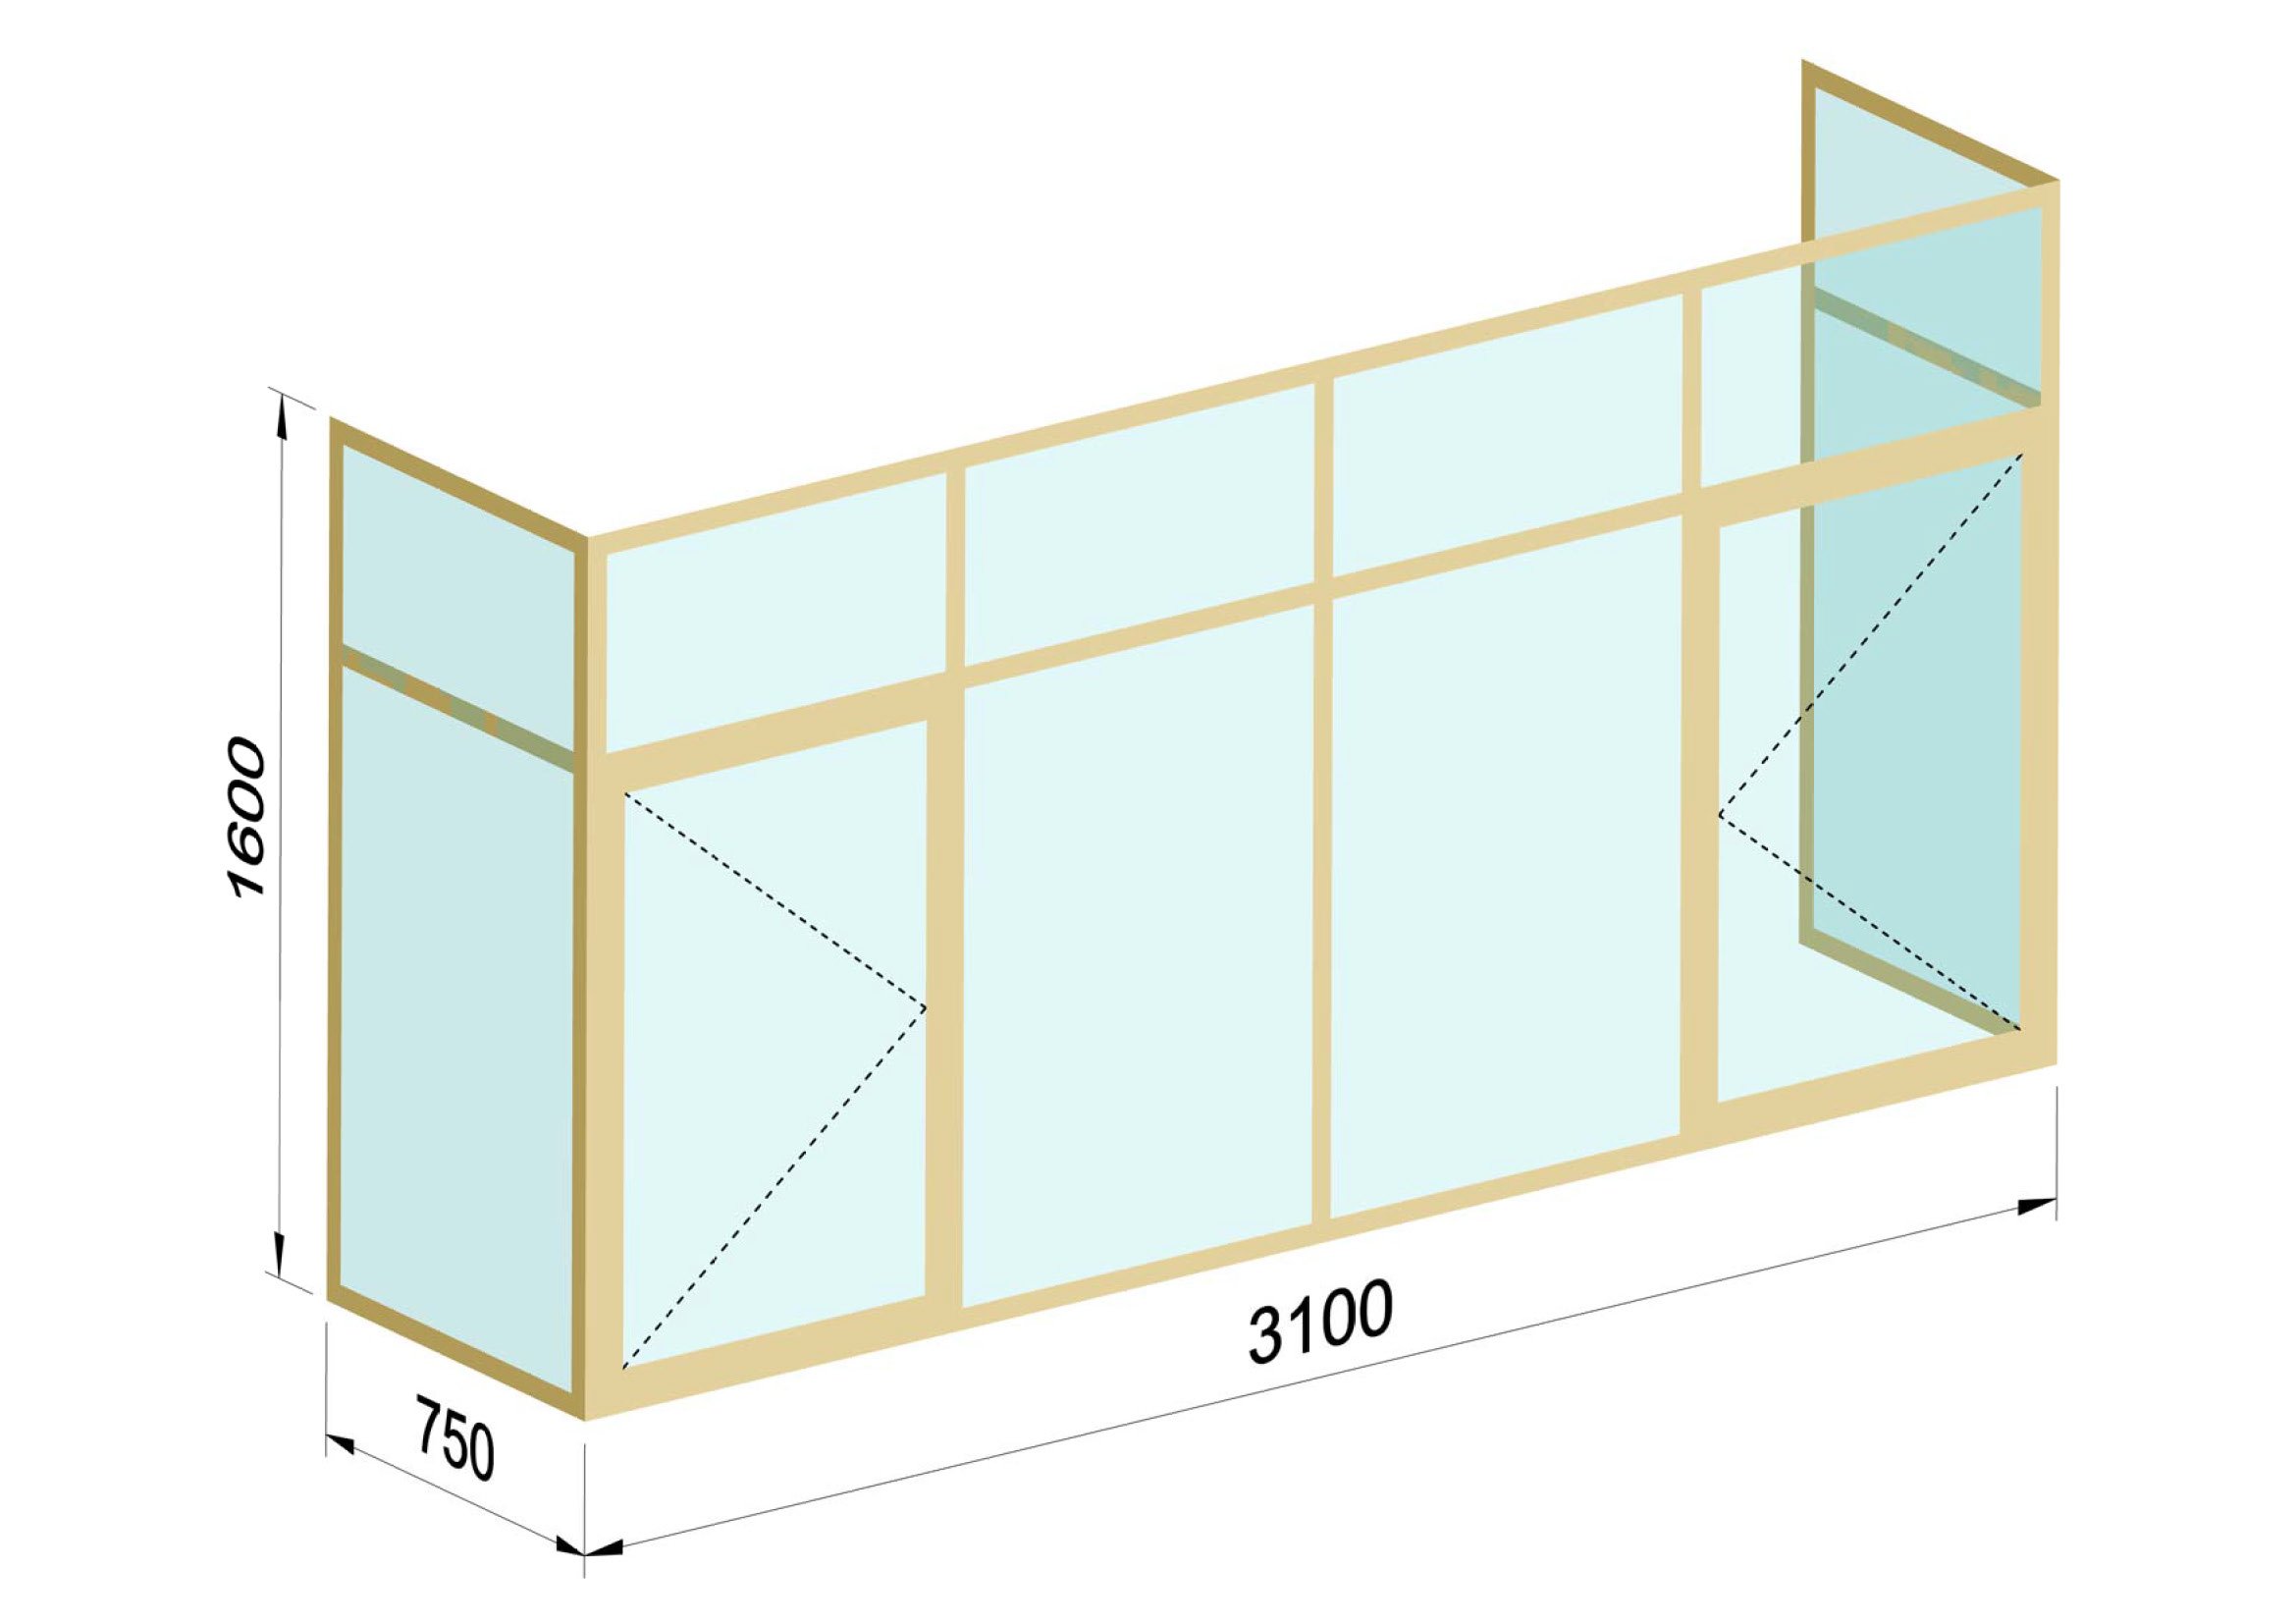 Схема балкона в панельном доме